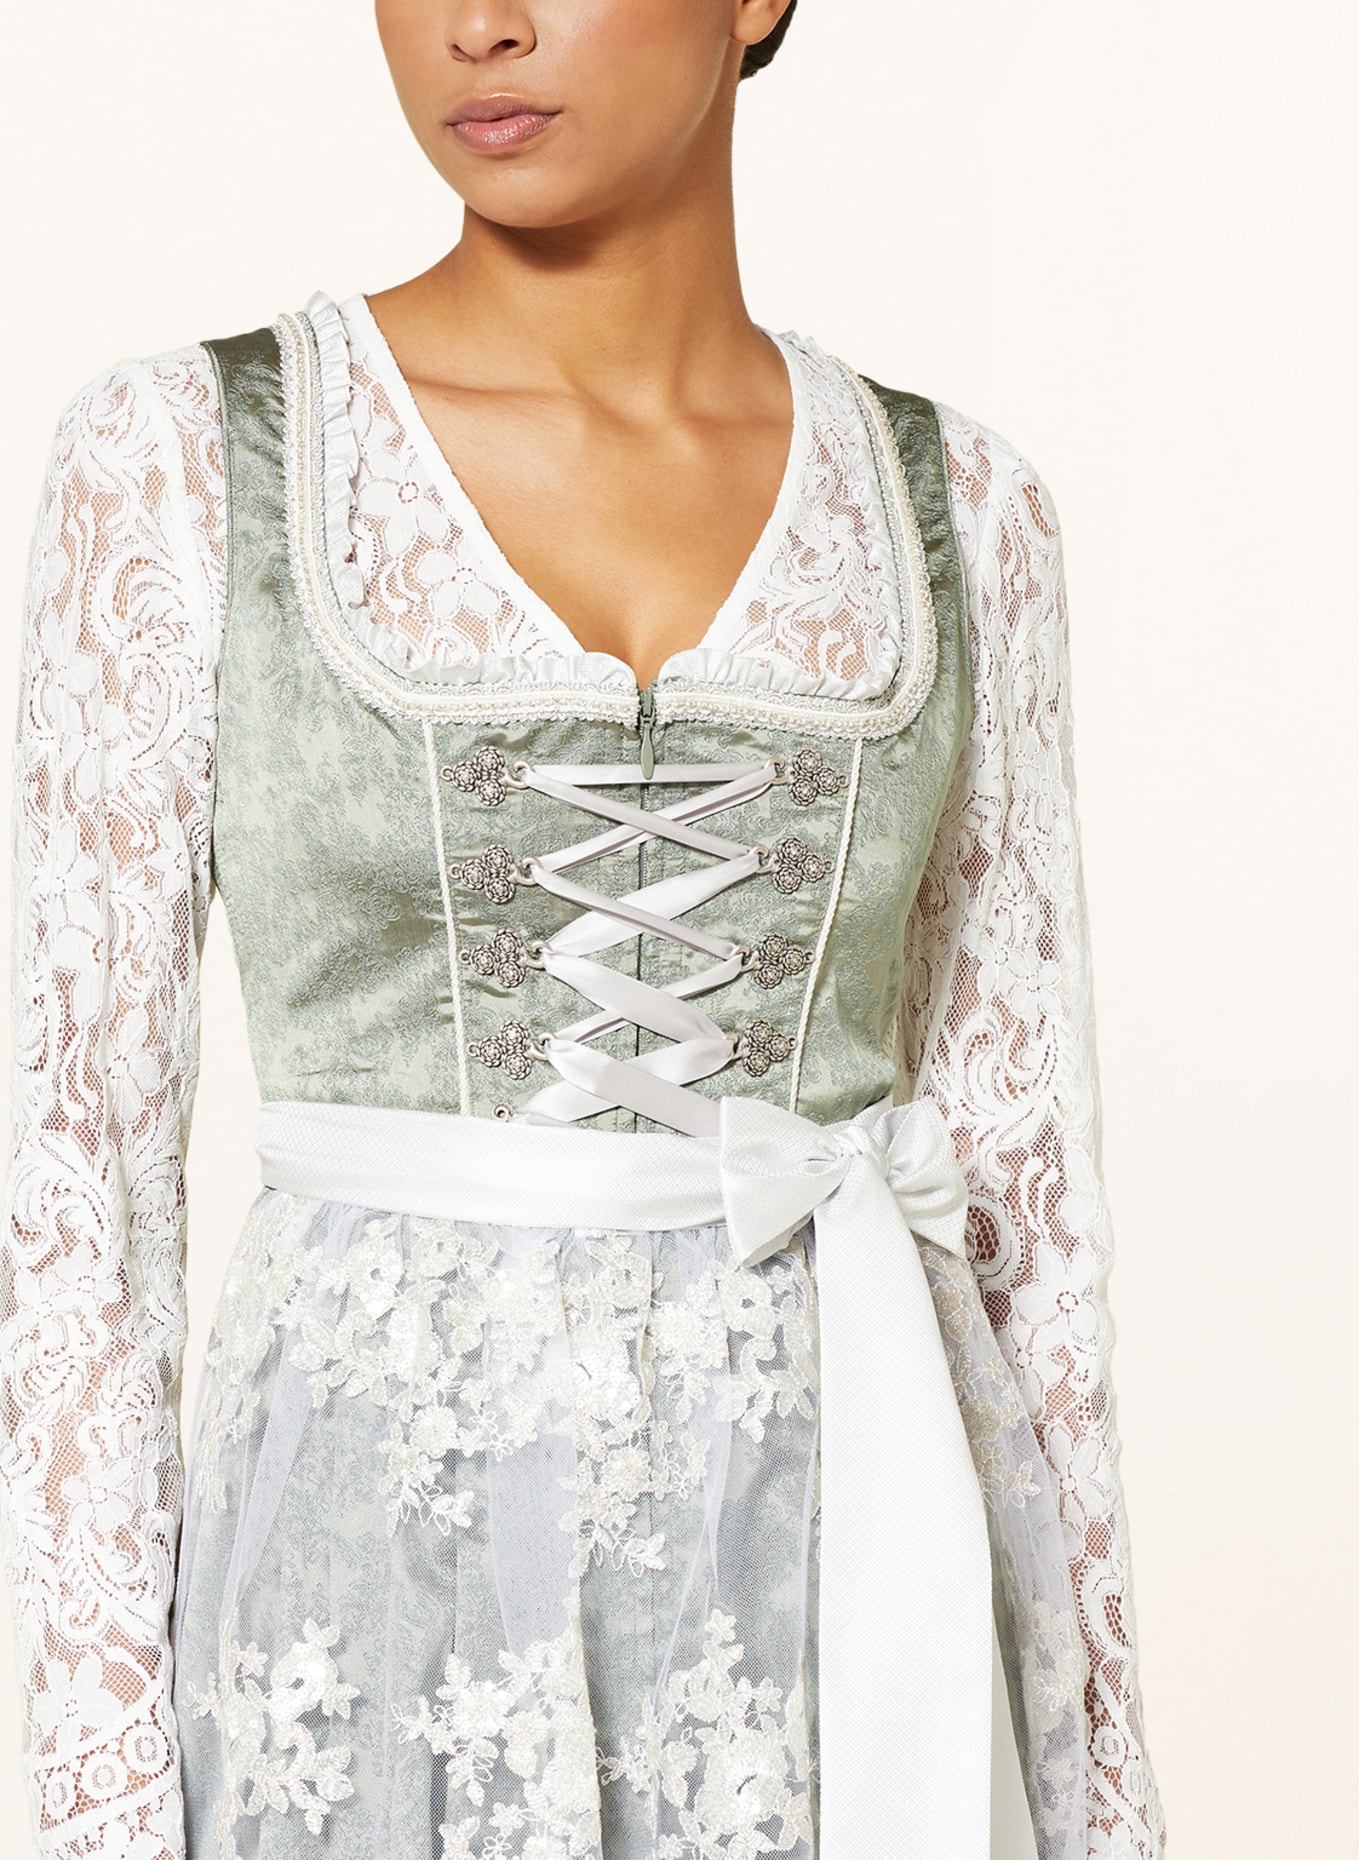 KRÜGER Dirndl blouse made of lace, Color: ECRU (Image 3)